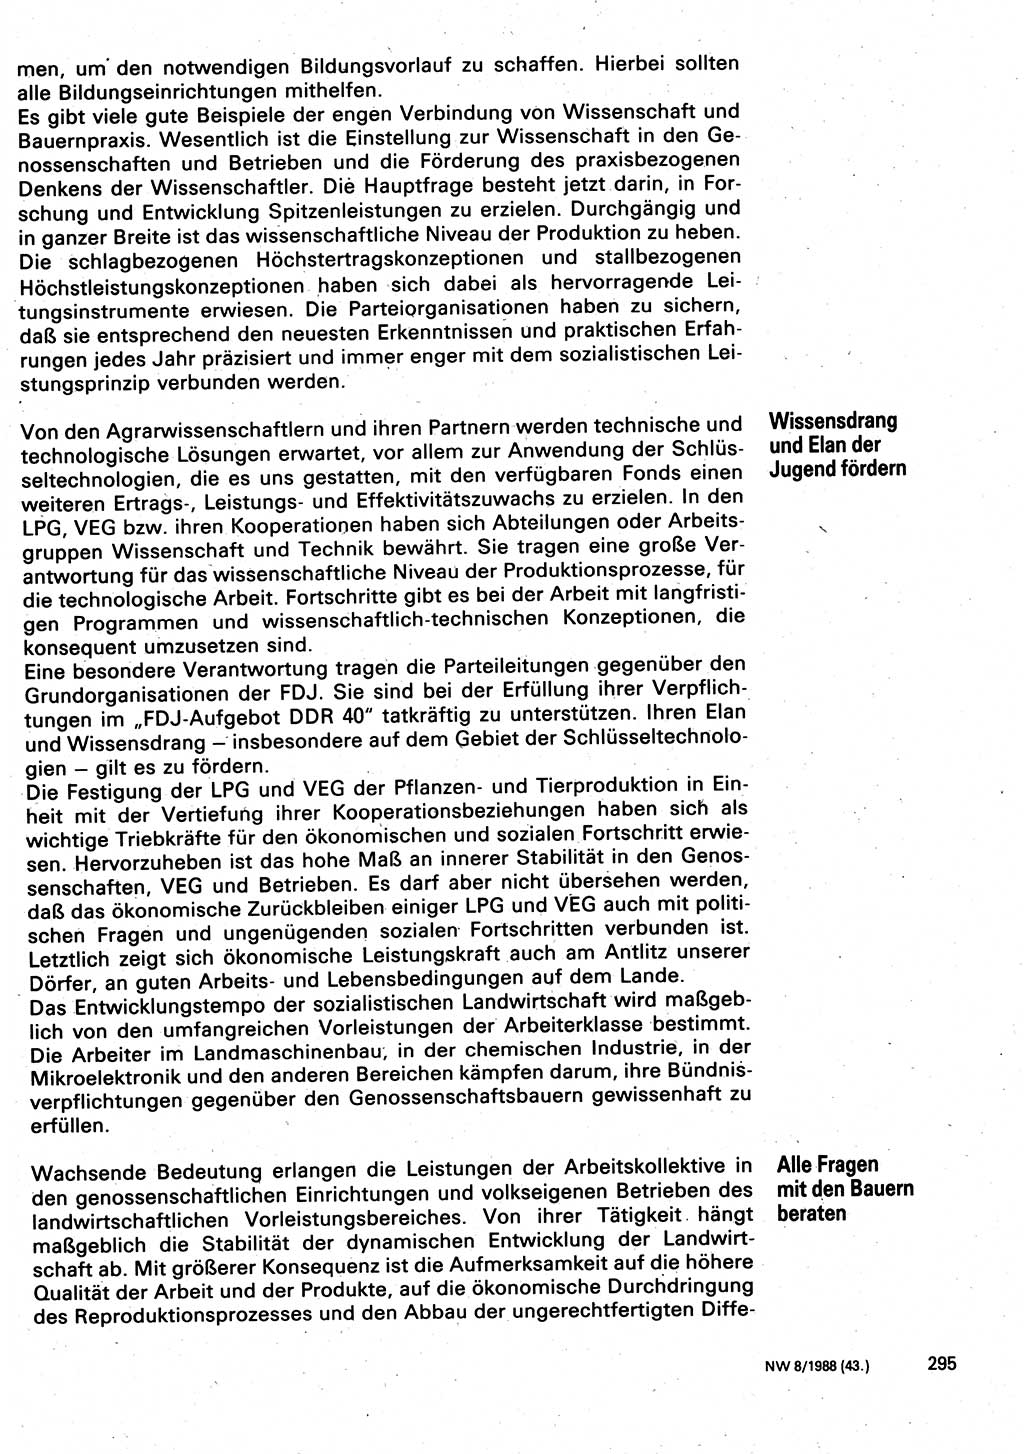 Neuer Weg (NW), Organ des Zentralkomitees (ZK) der SED (Sozialistische Einheitspartei Deutschlands) für Fragen des Parteilebens, 43. Jahrgang [Deutsche Demokratische Republik (DDR)] 1988, Seite 295 (NW ZK SED DDR 1988, S. 295)